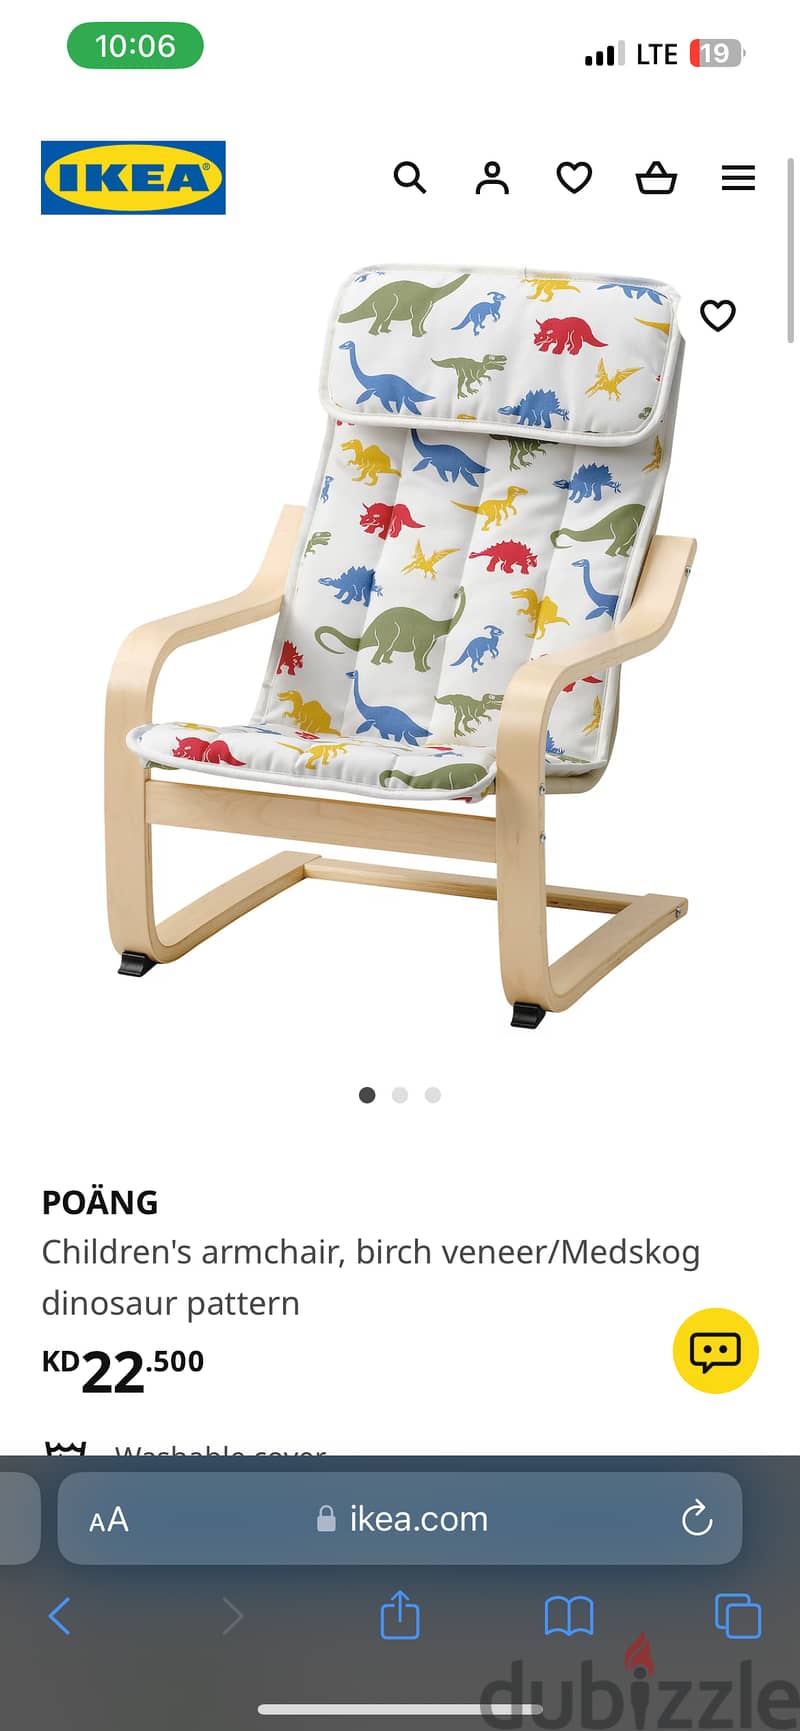 80KD IKEA Armchair & Footstool for 35KD 2